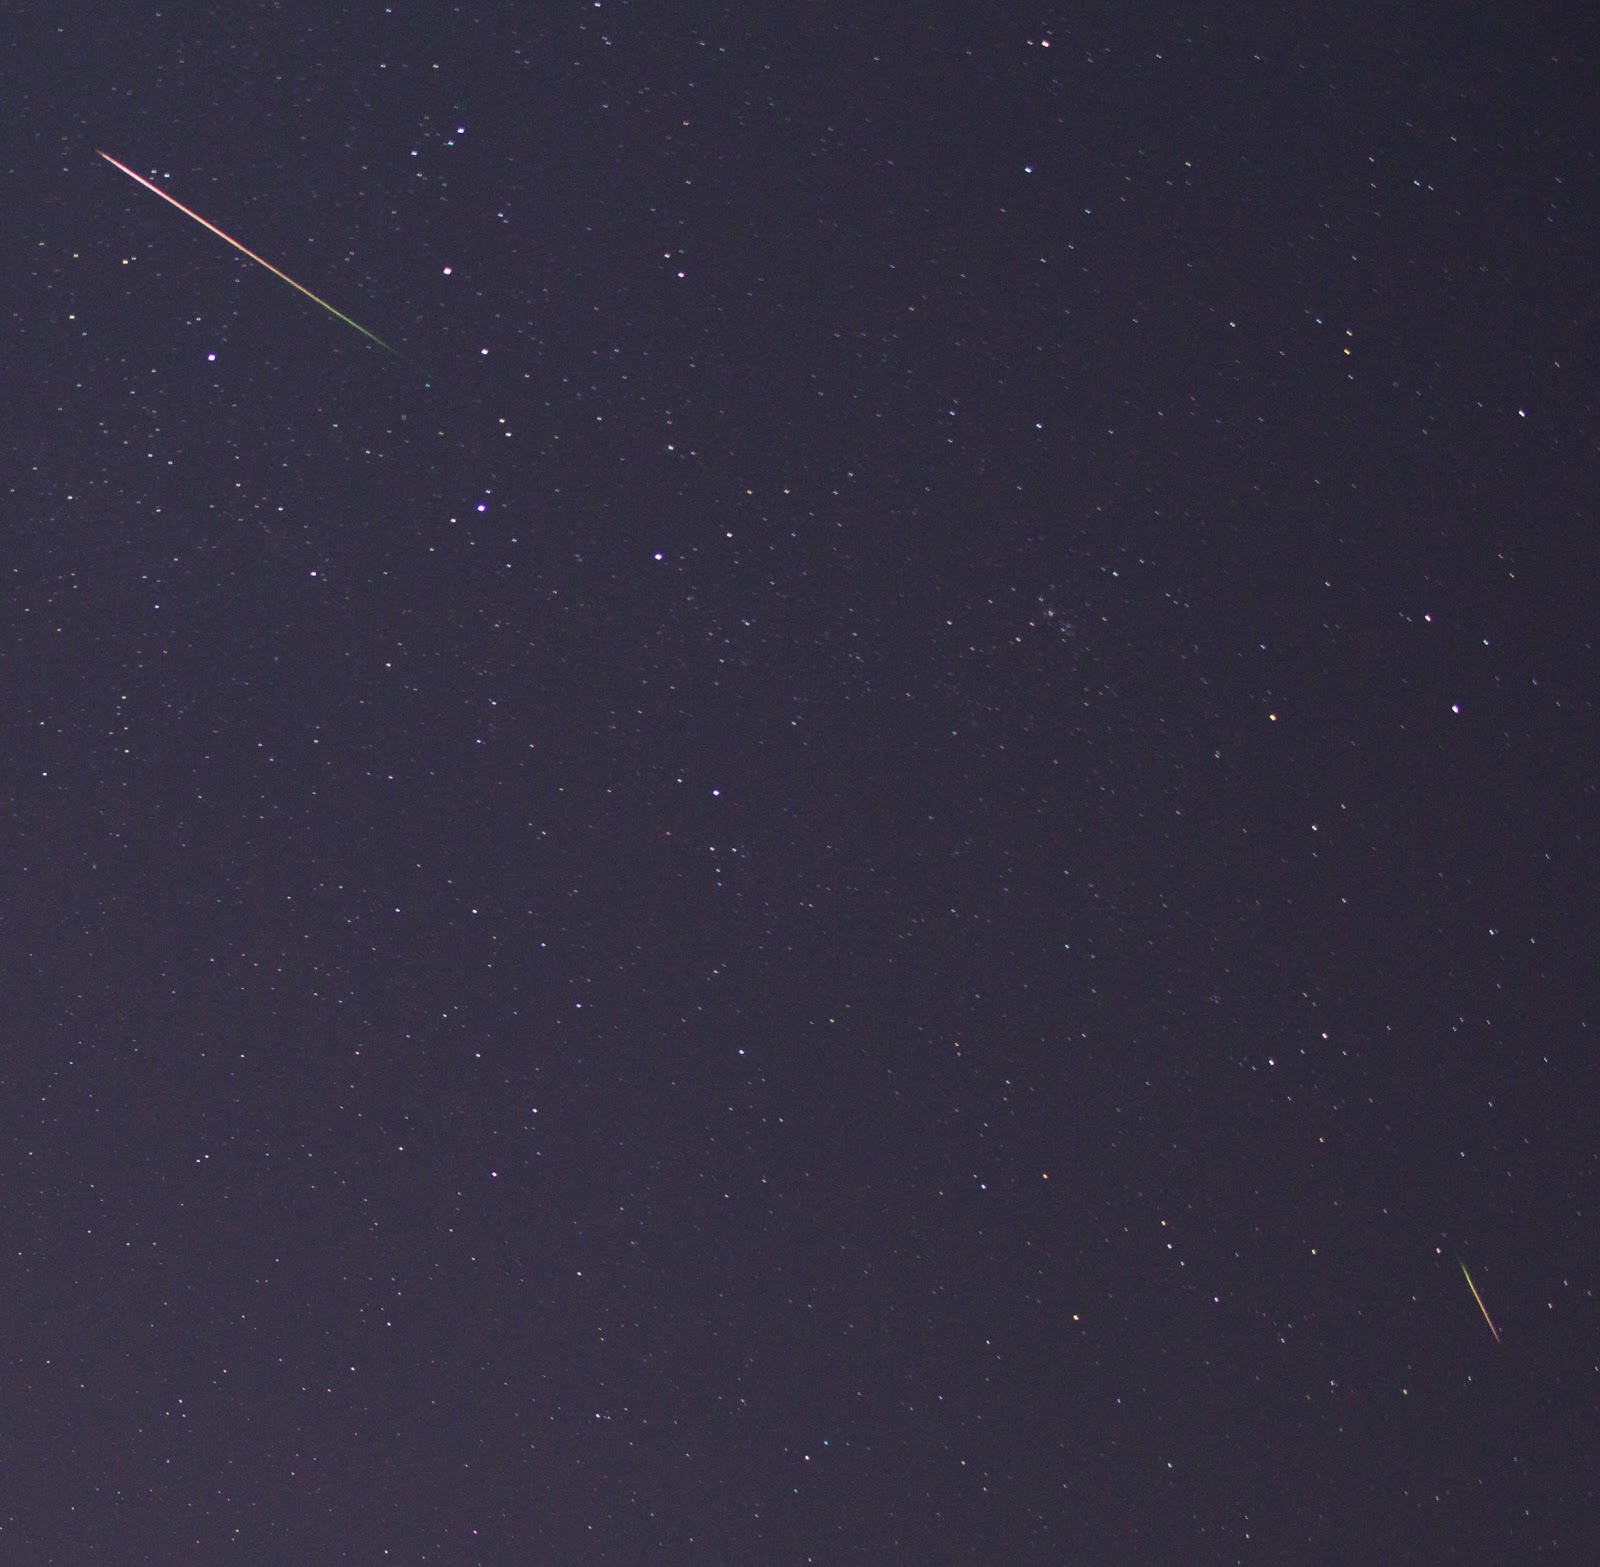 bright perseid meteors